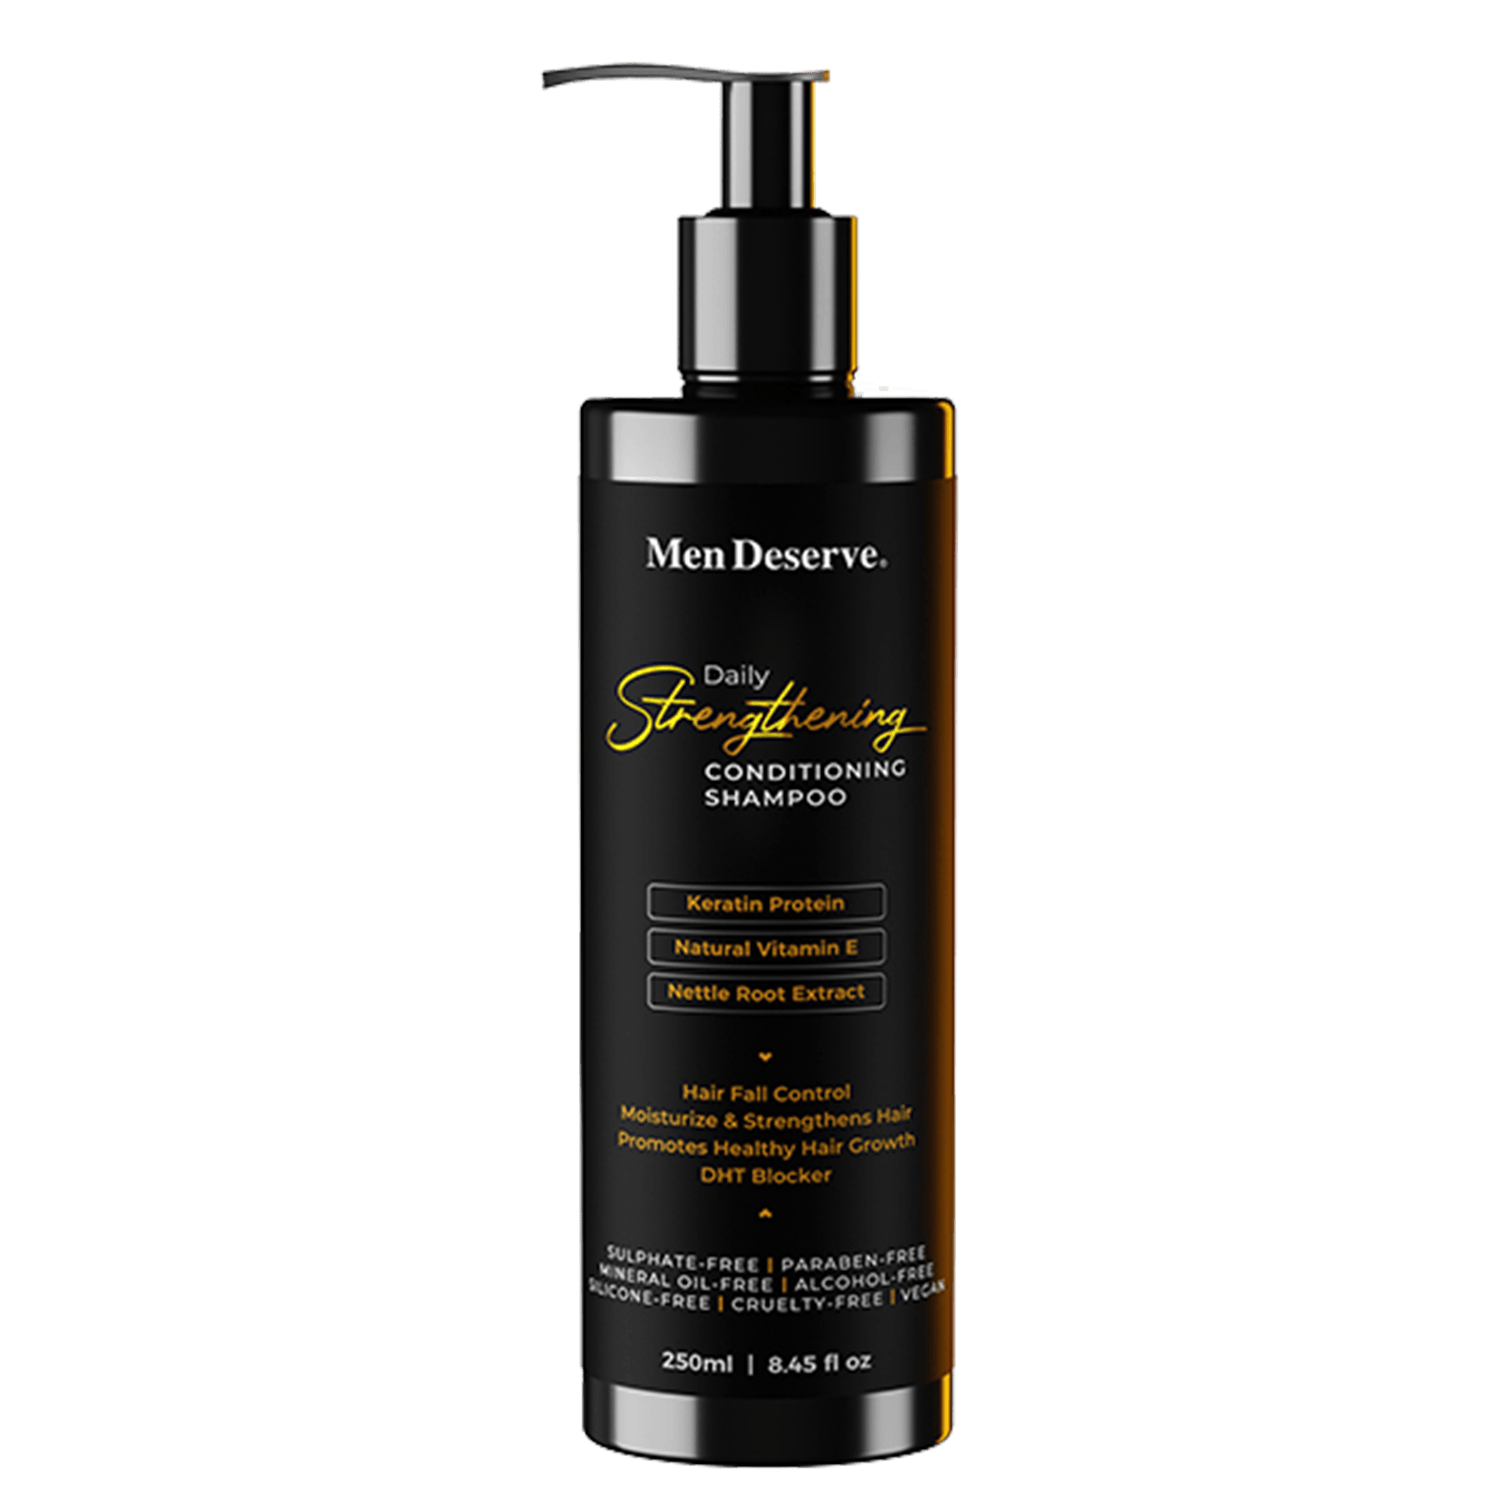 Men Deserve | Men Deserve Daily Strengthening Conditioning Shampoo (250ml)